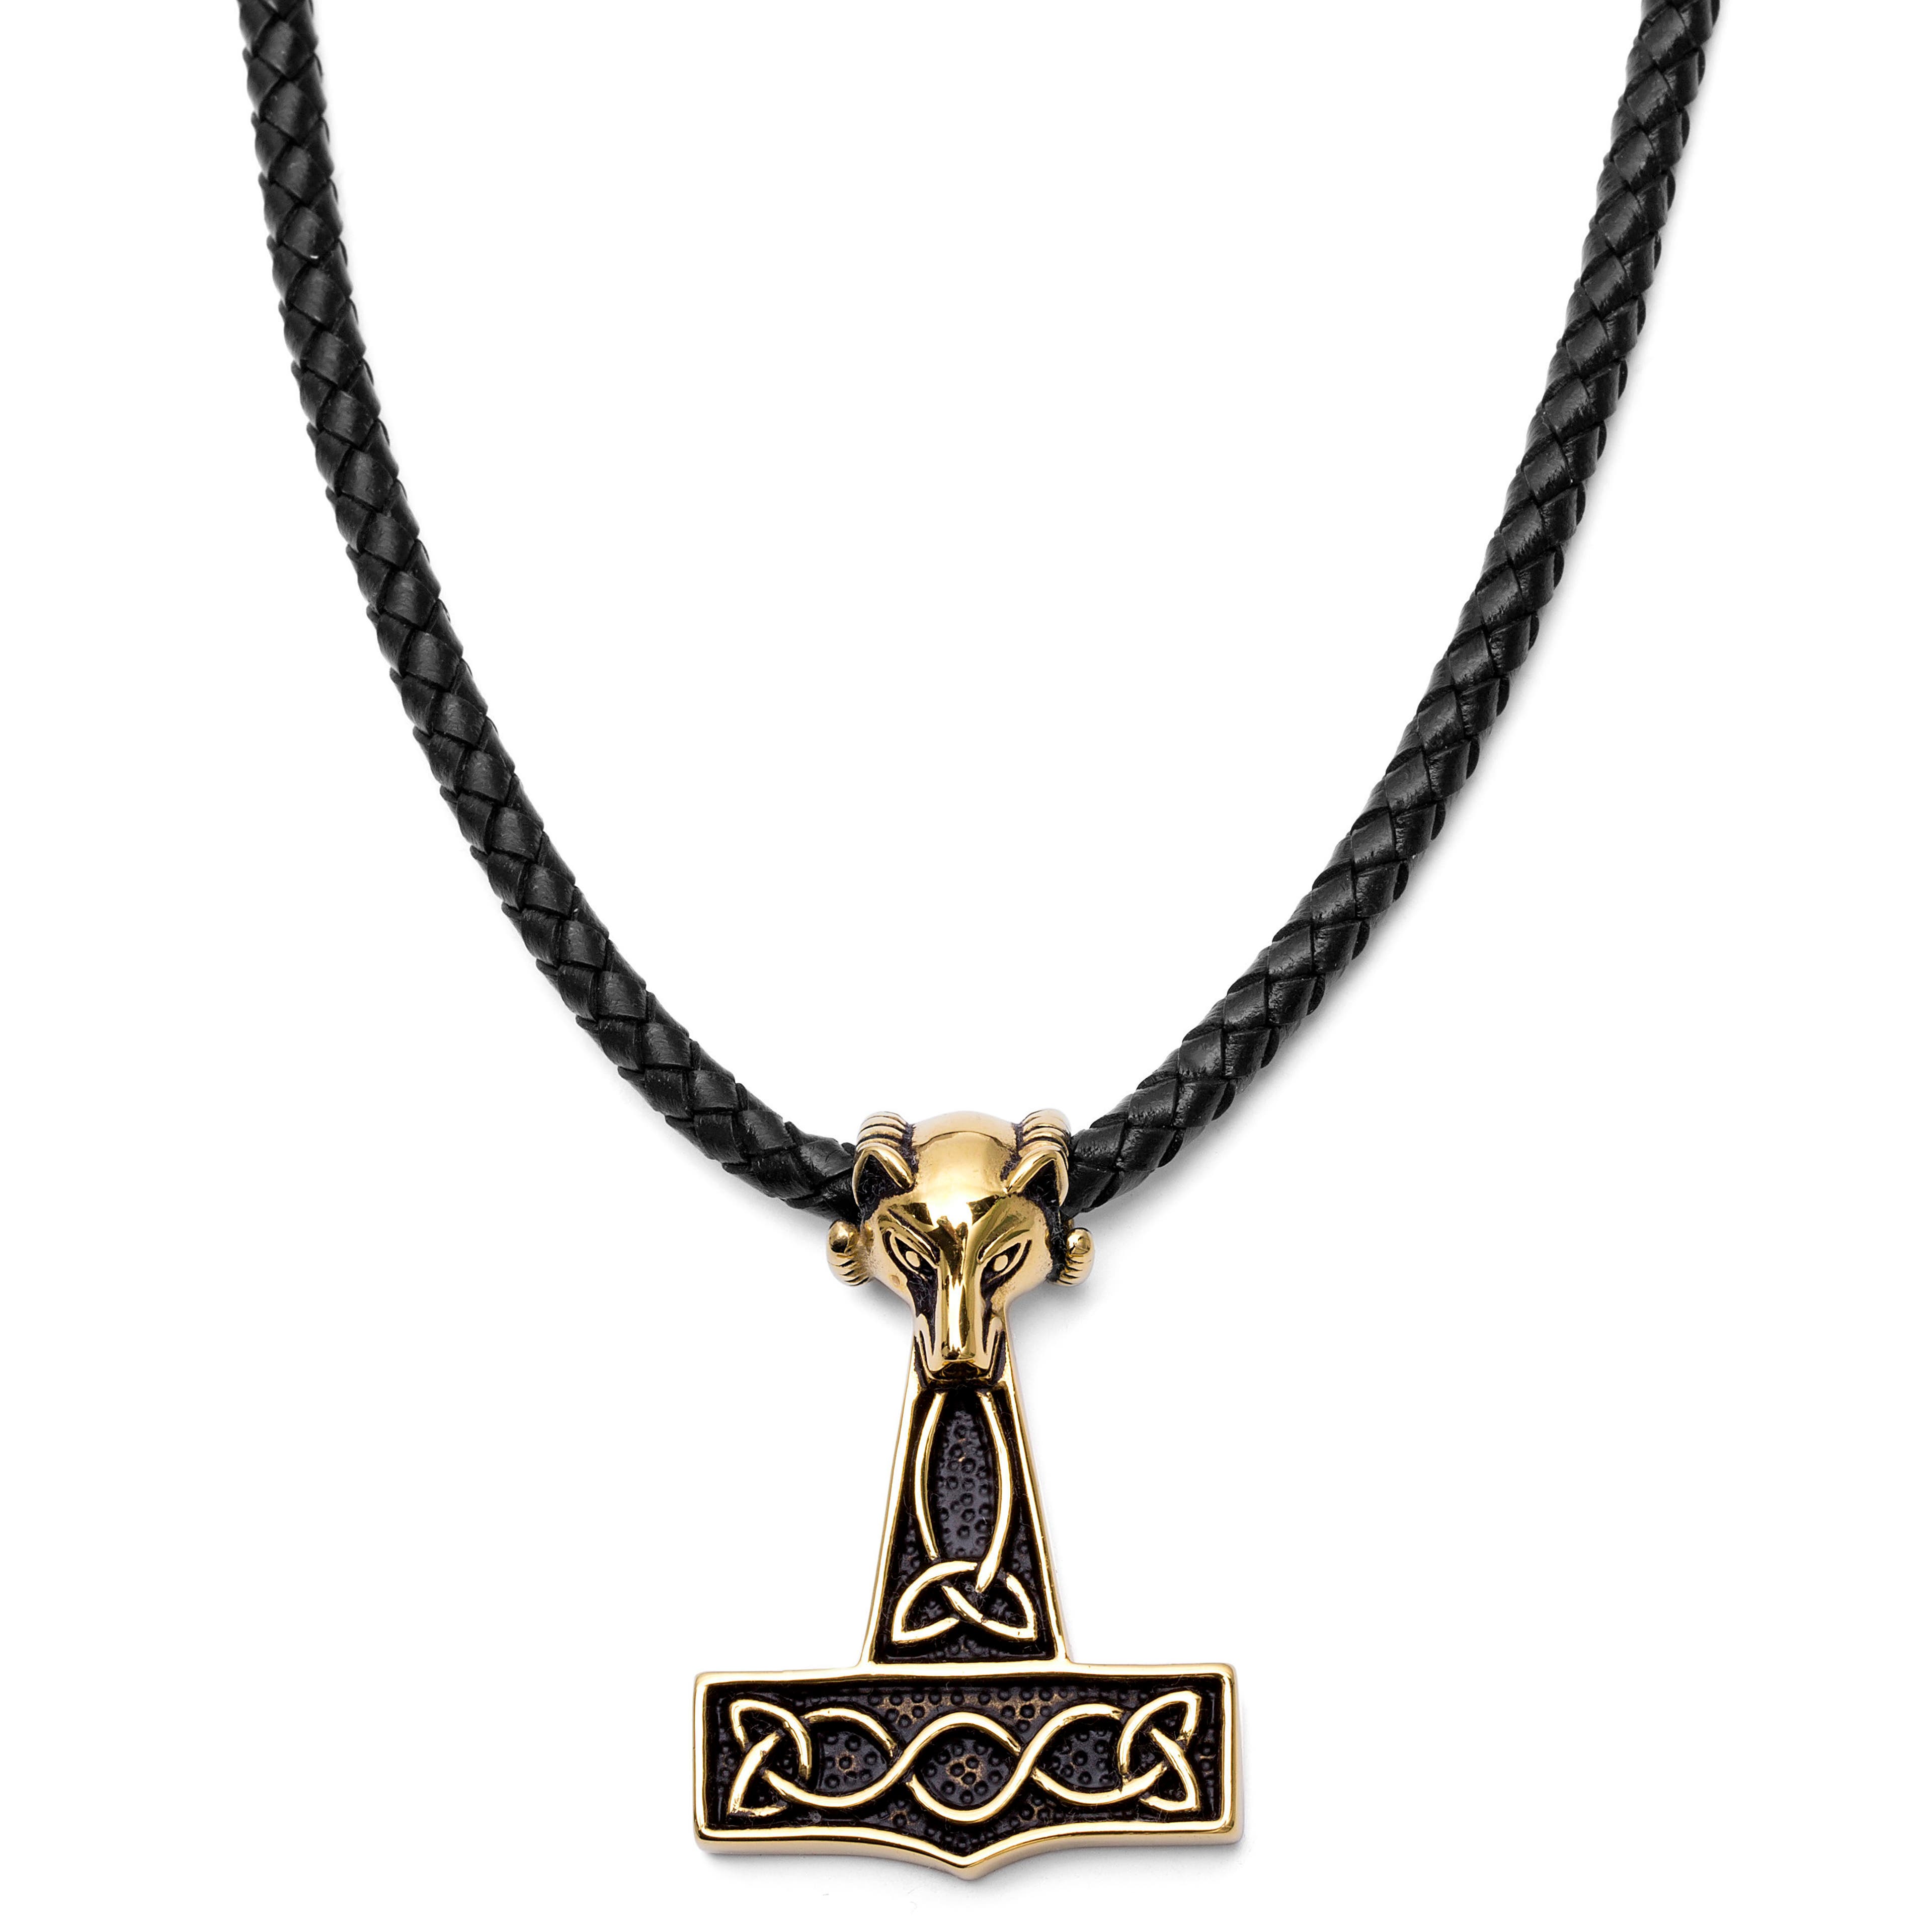 Černý kožený náhrdelník s přívěskem vlka zlaté barvy